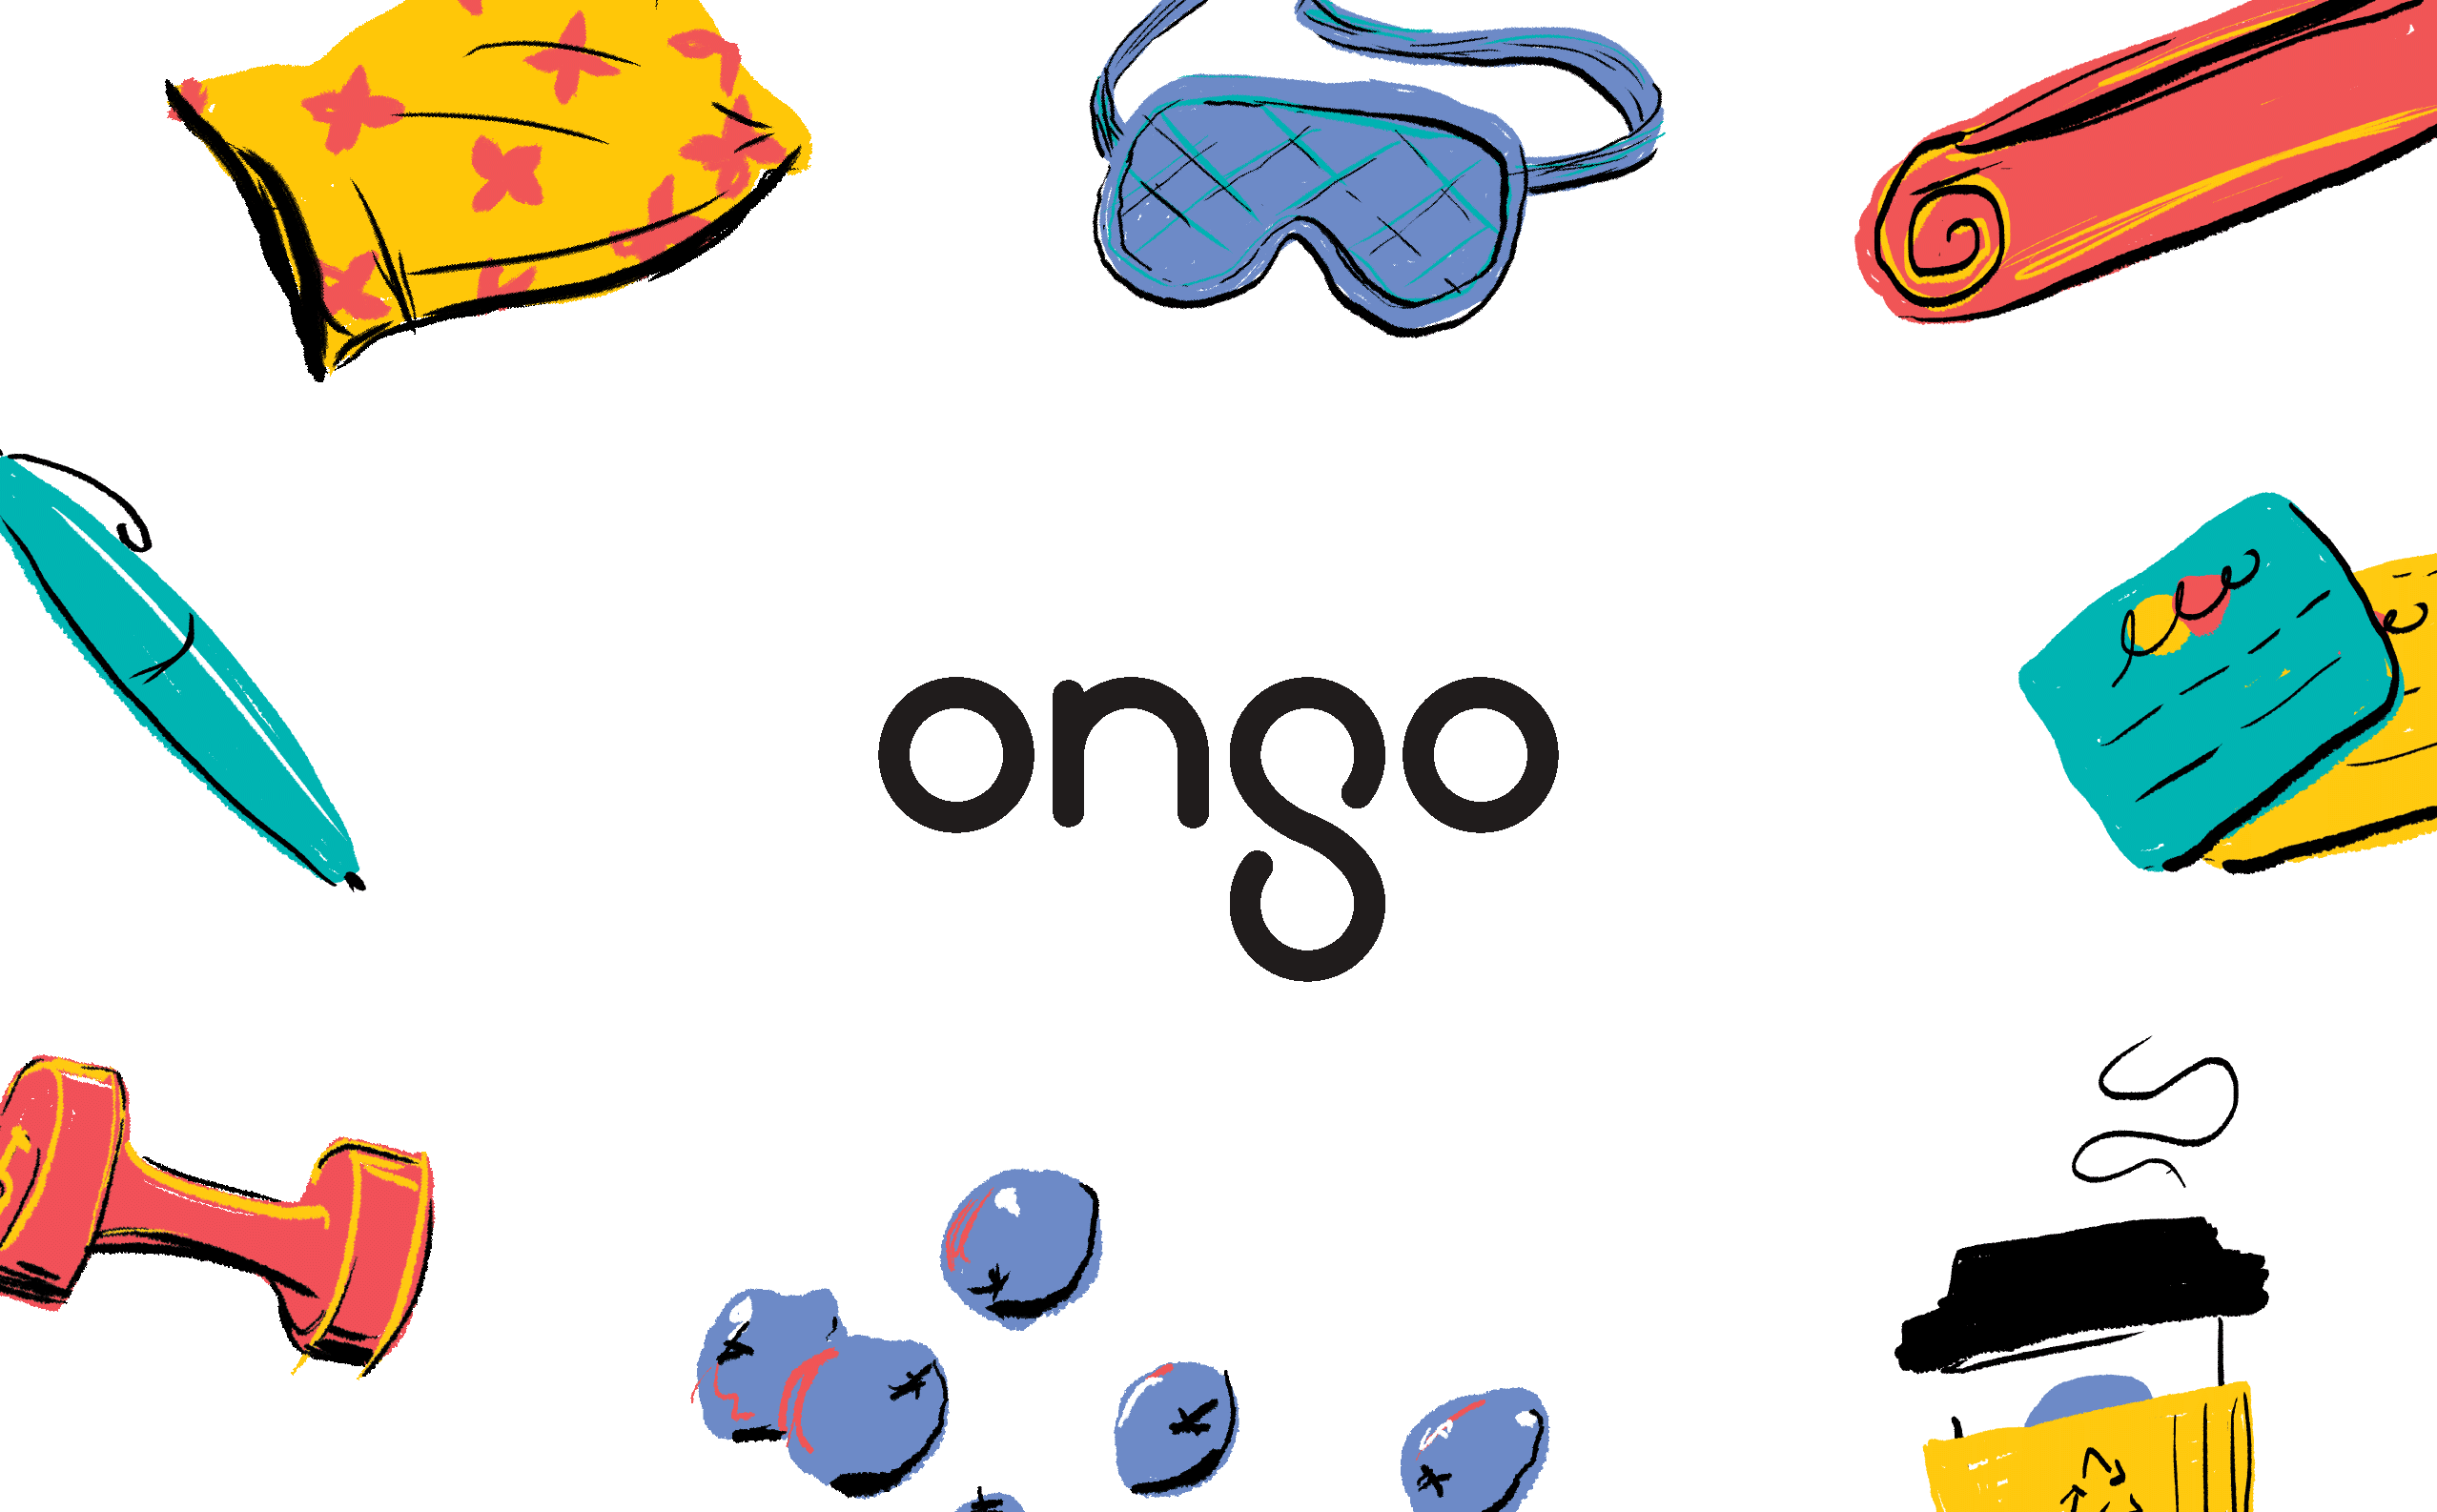 Ongo